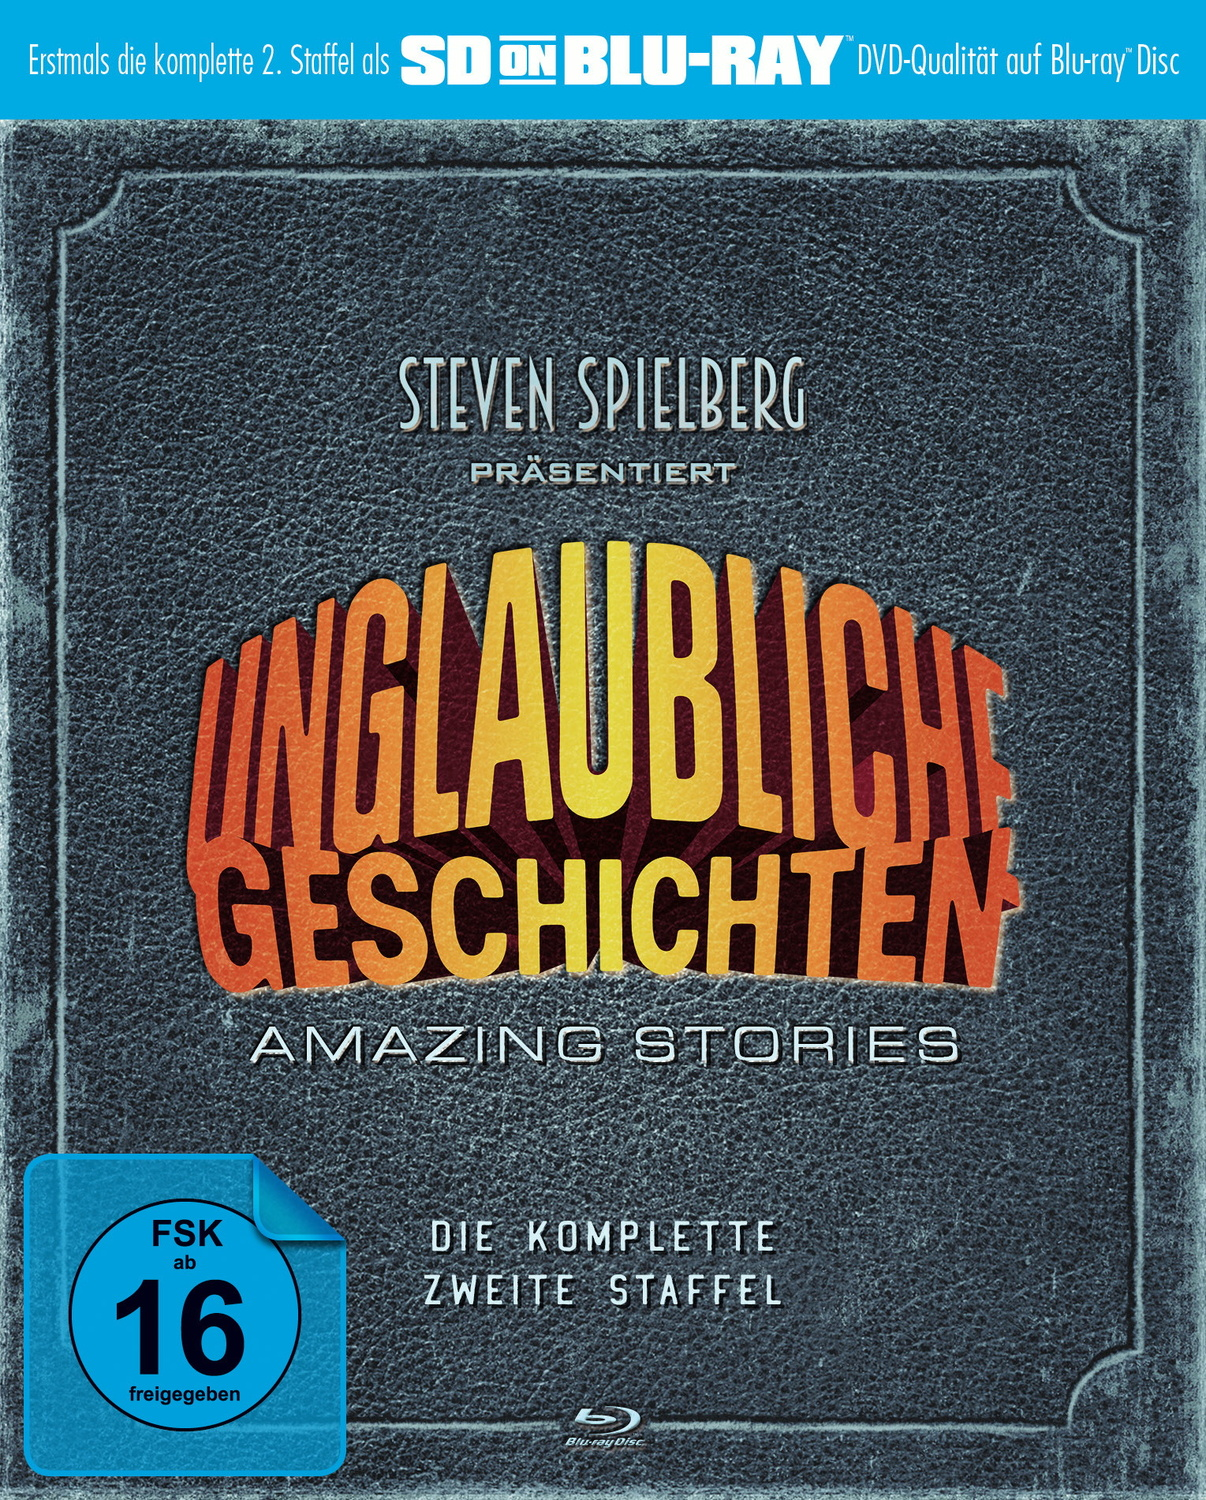 Staffel Blu-ray Geschichten: (SD Blu-ray) komplette zweite on Die Unglaubliche